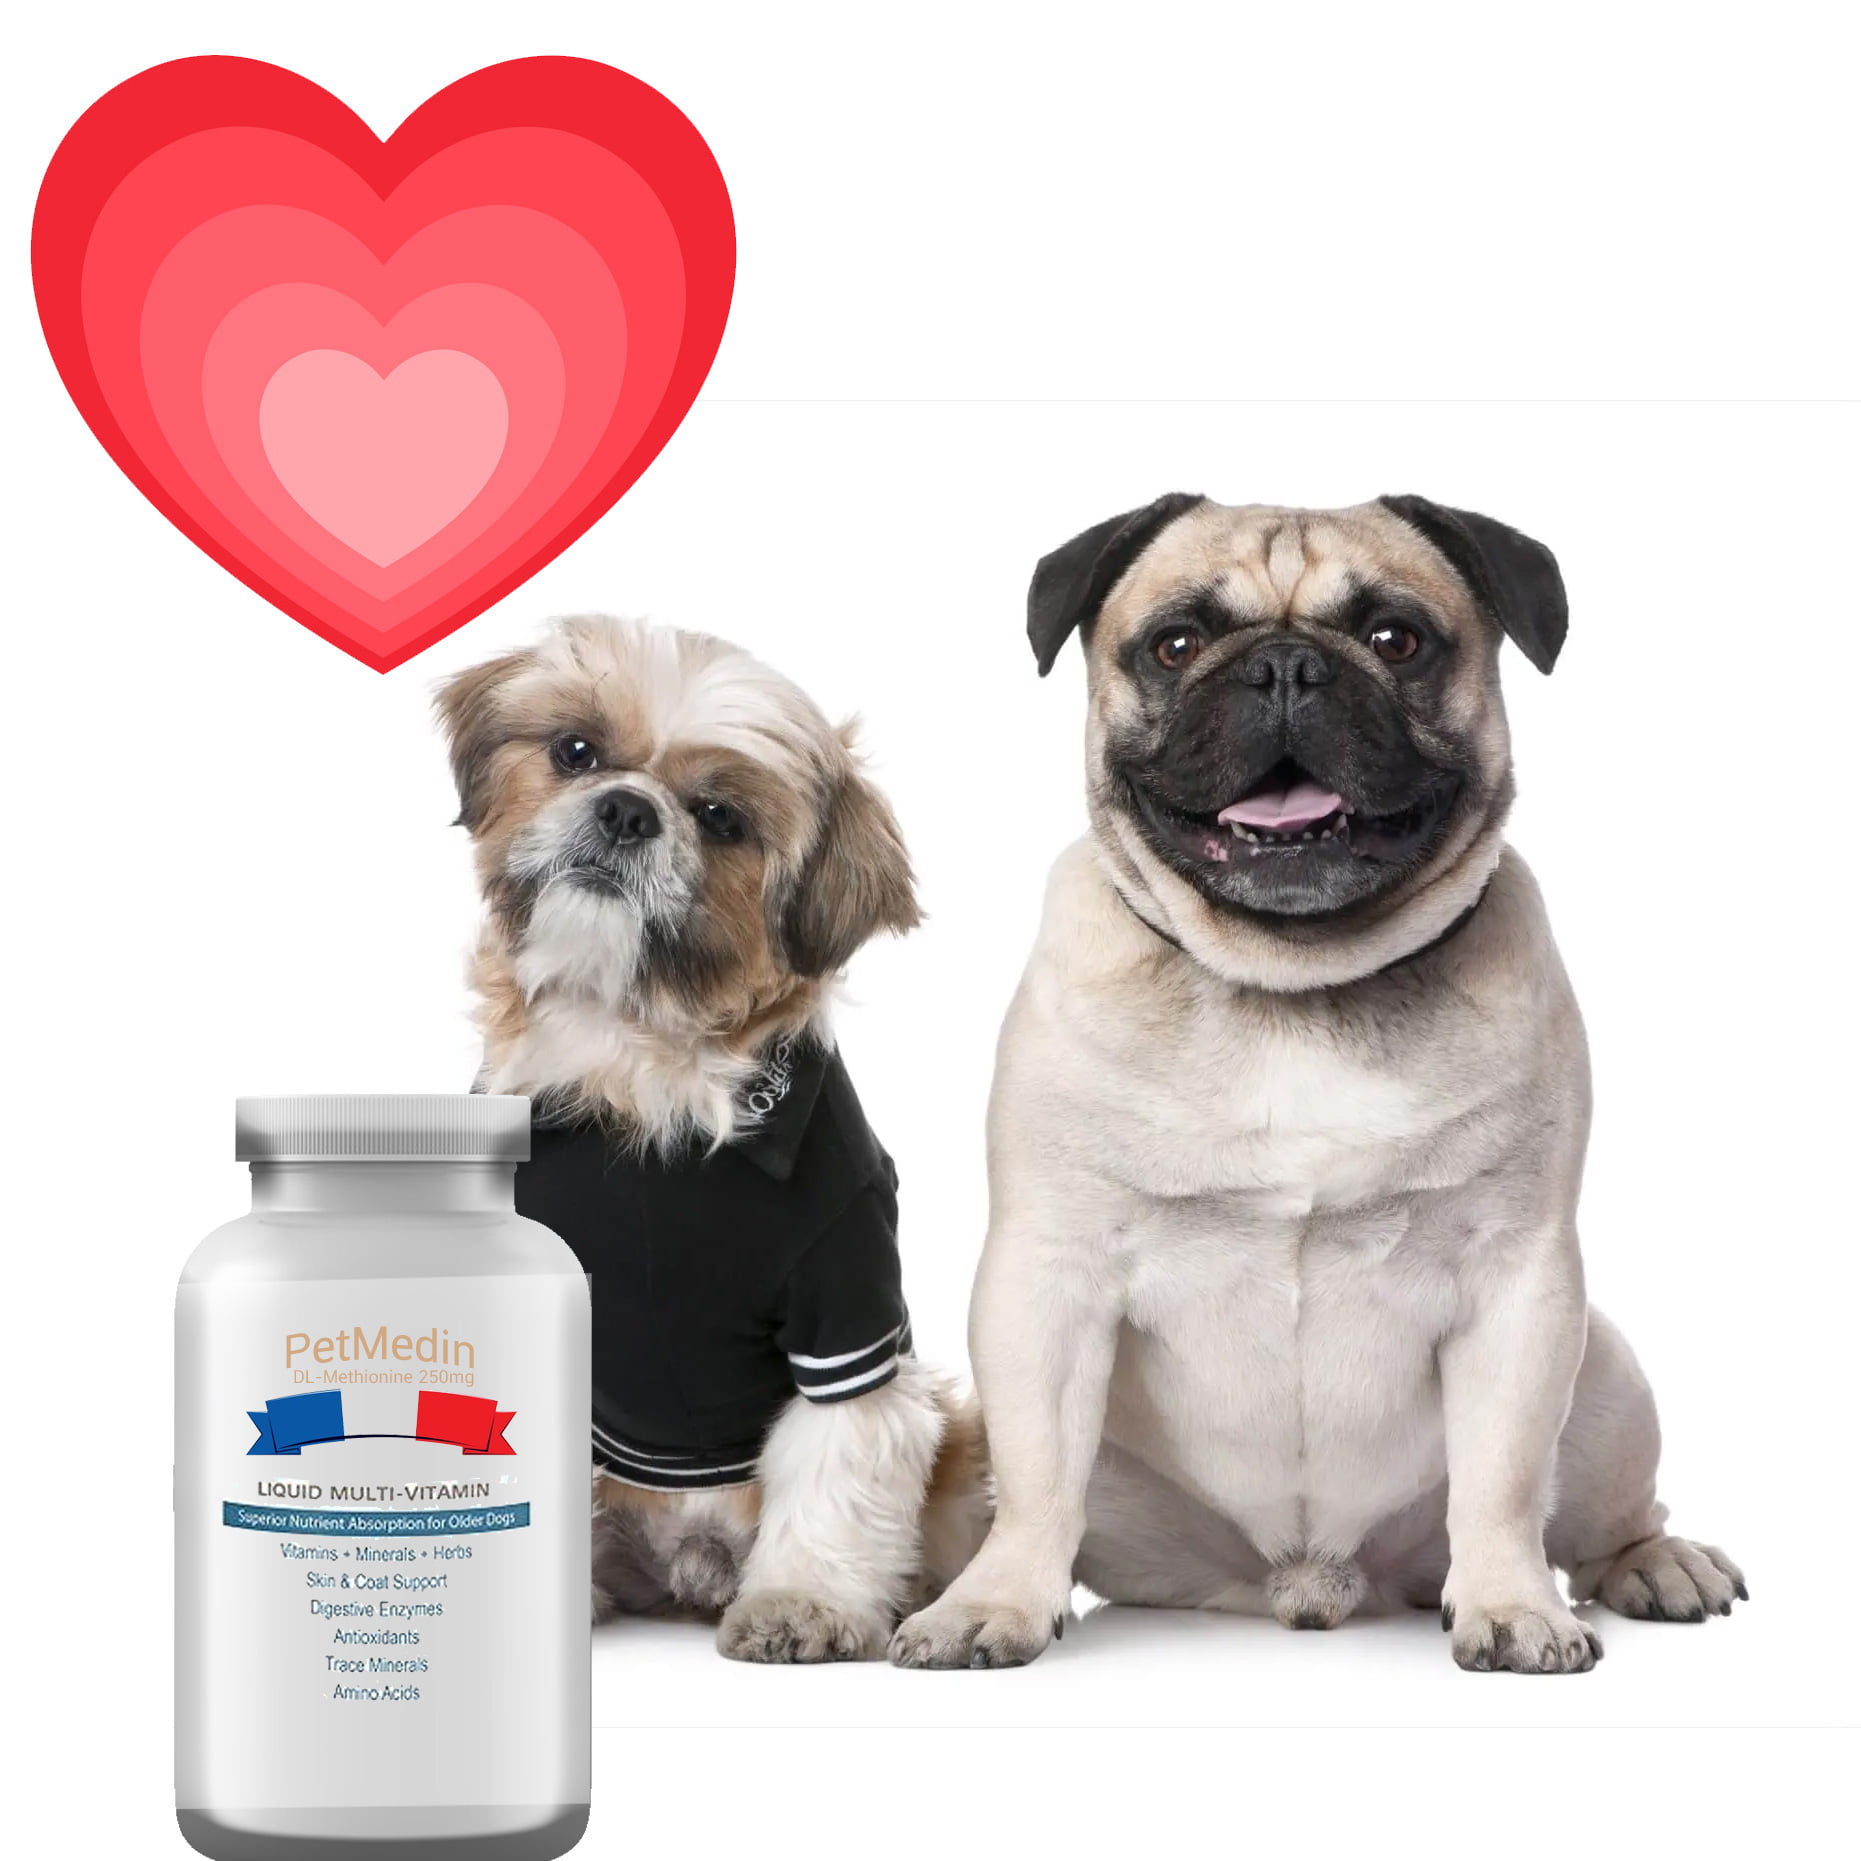 โรคหัวใจในสุนัข รักษาที่ไหนดีศูนย์โรคหัวใจสุนัขตรวจ “หัวใจสุนัข” ราคาการรักษาโรคหัวใจรั่วในสุนัขโรคหัวใจโตในสุนัขสุนัขโรคหัวใจ pantipอาหารสุนัขโรคหัวใจทำเองecho หัวใจสุนัขรักษาโรคหัวใจในสุนัข